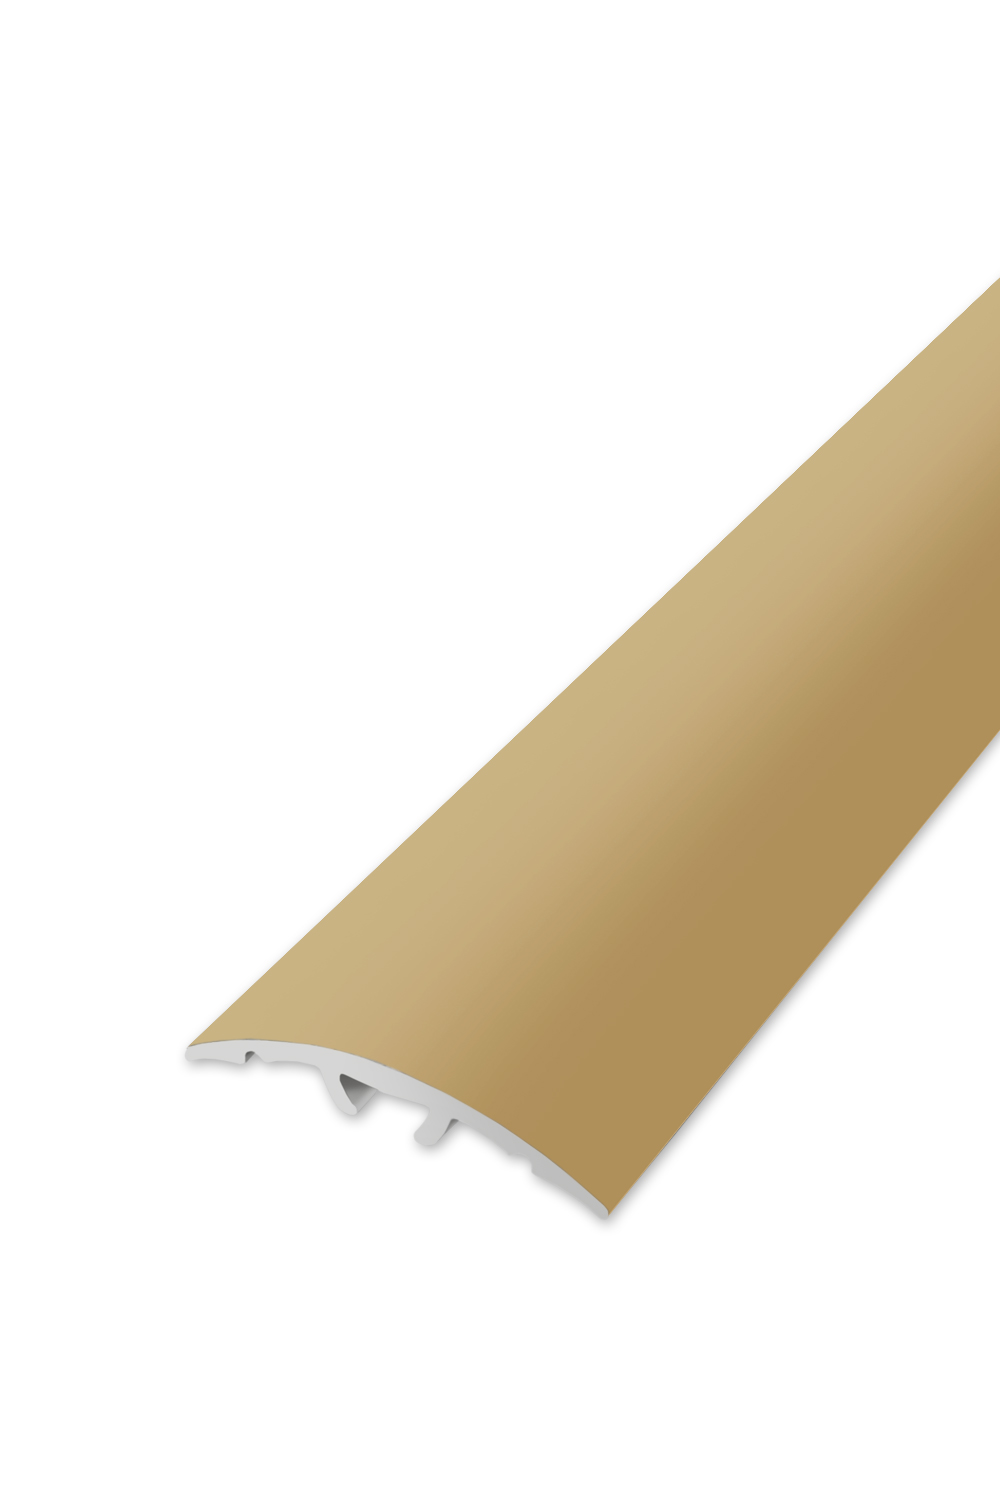 Přechodová lišta WELL 32 - Zlatá 270 cm